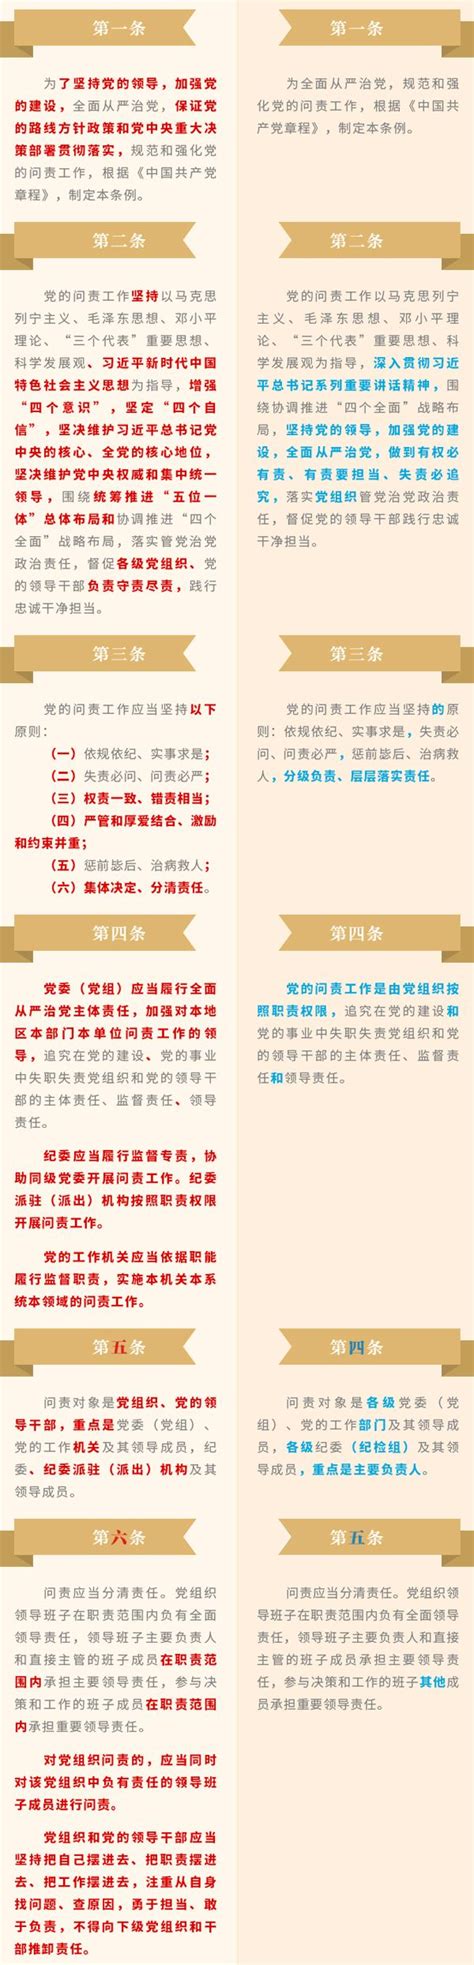 《中国共产党问责条例》修订前后对照（附表）_张艺凡